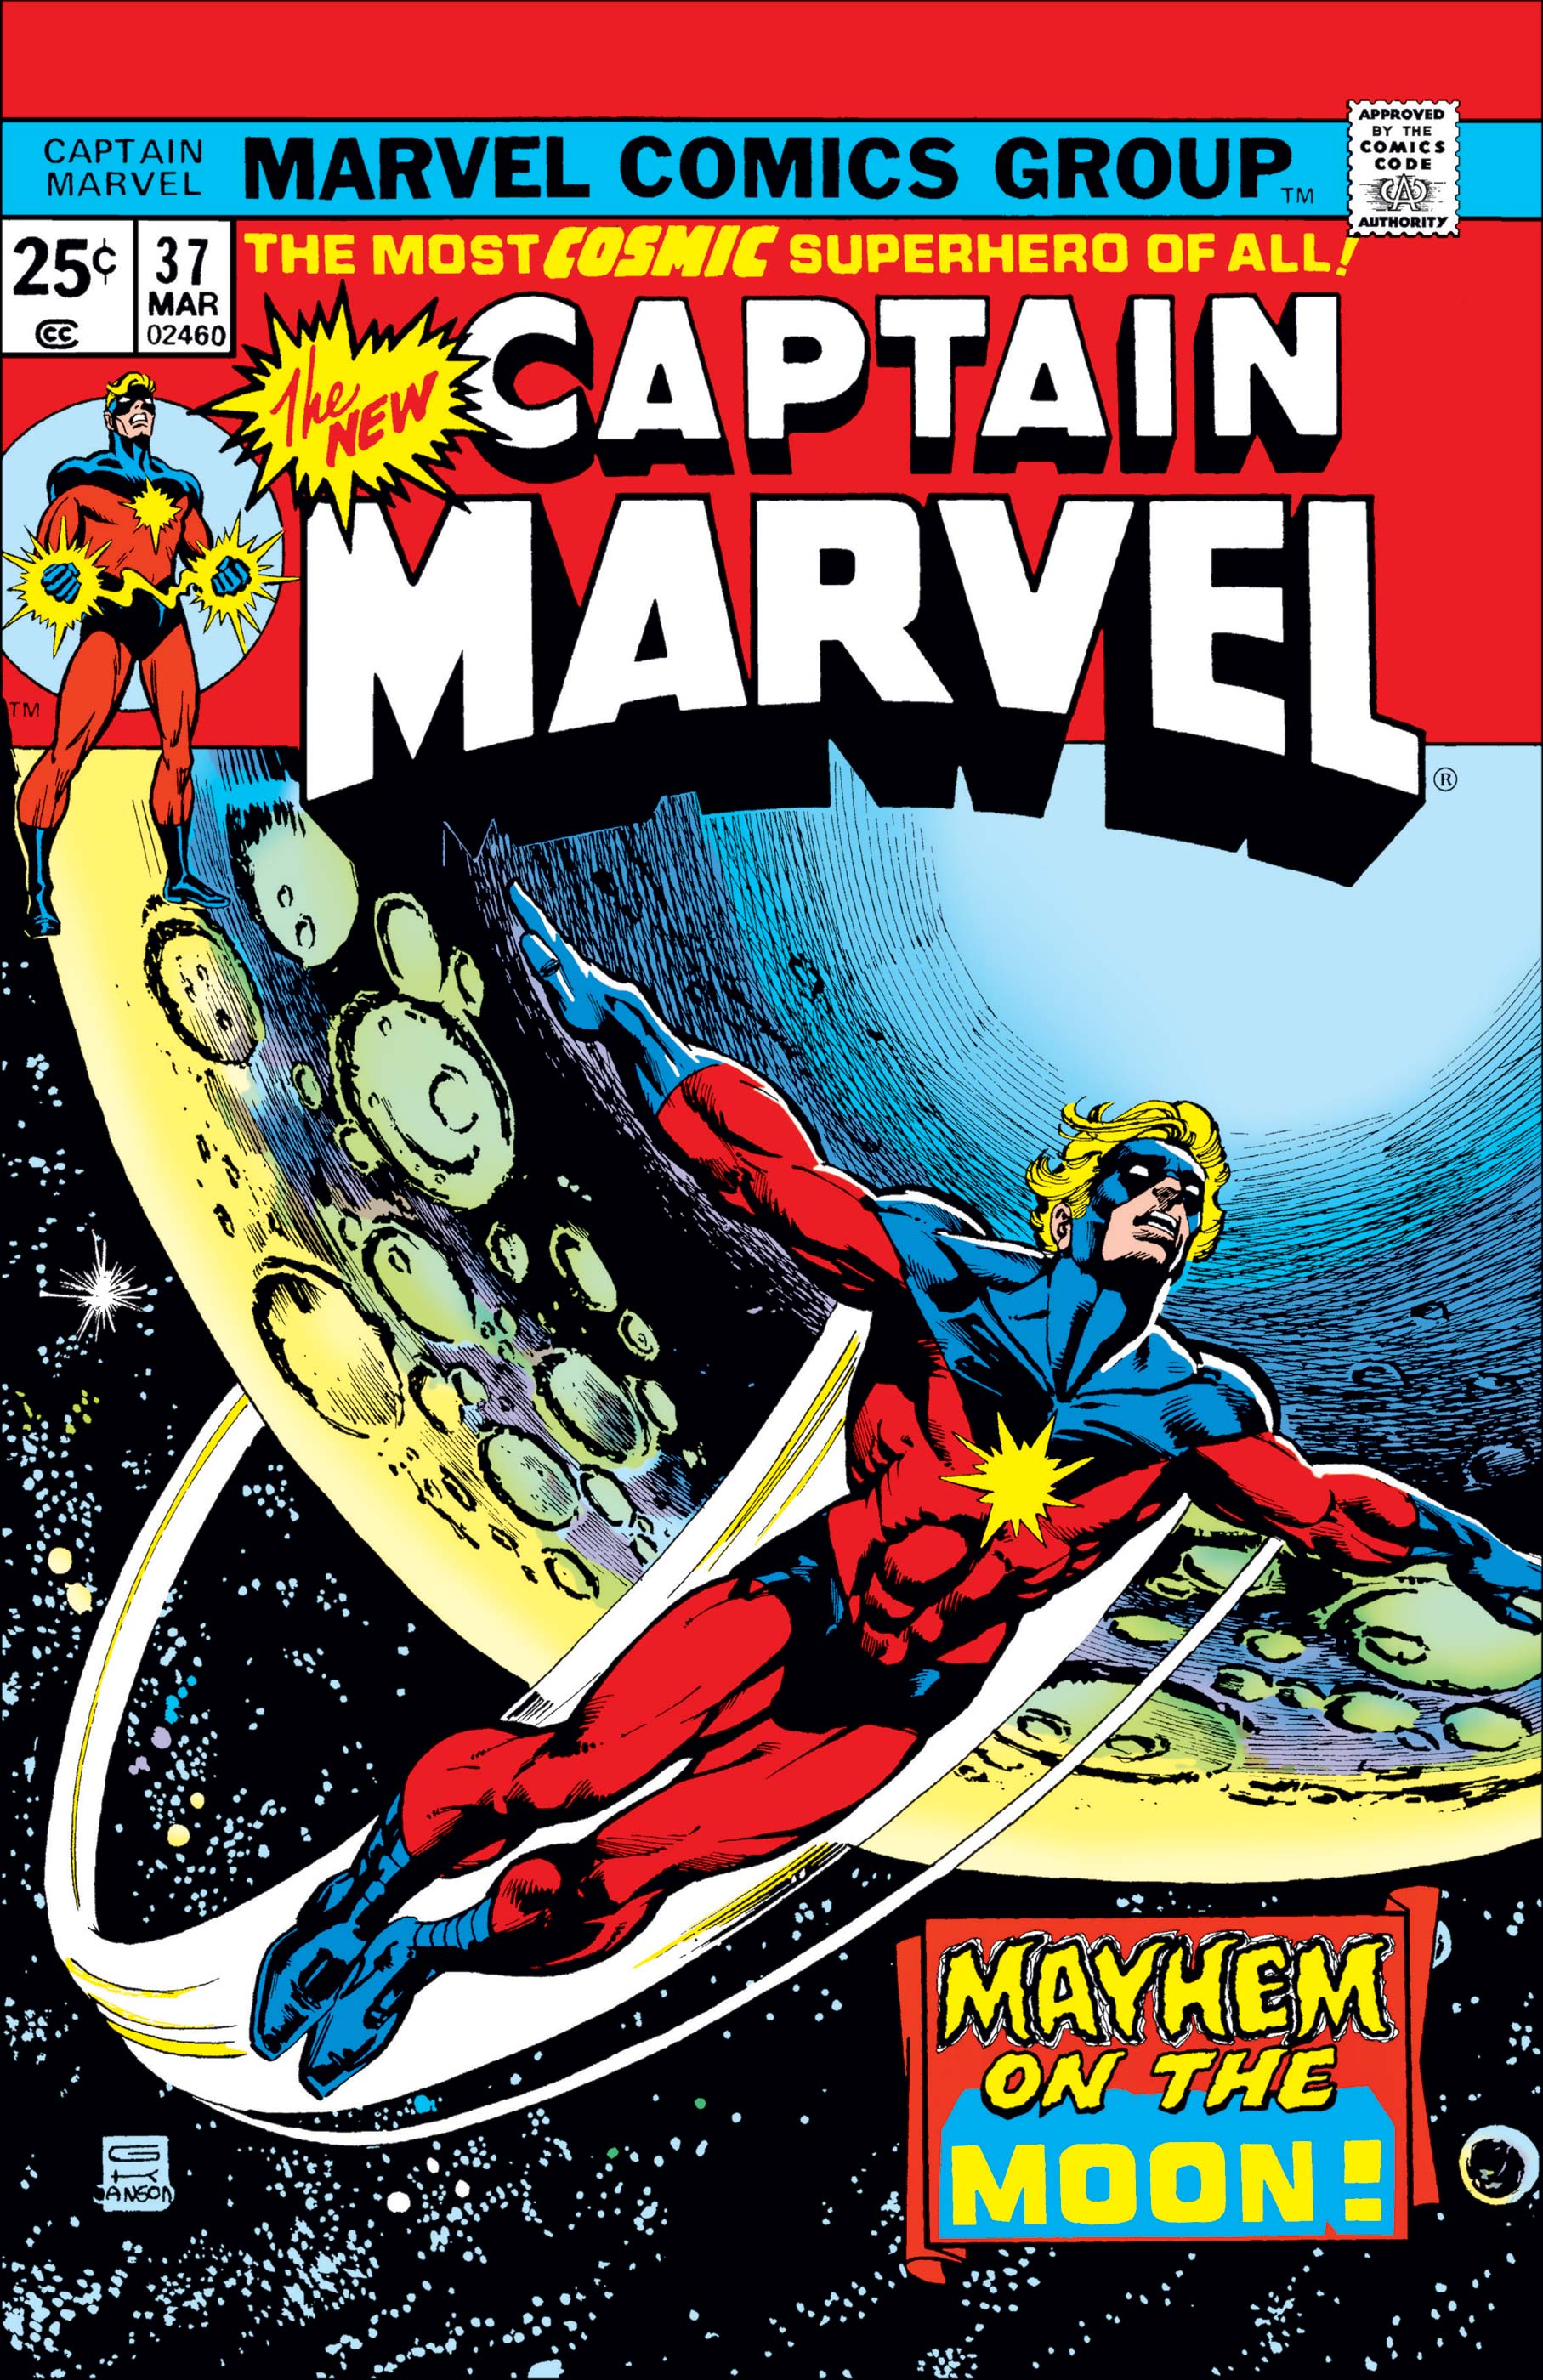 Captain Marvel (1968) #37